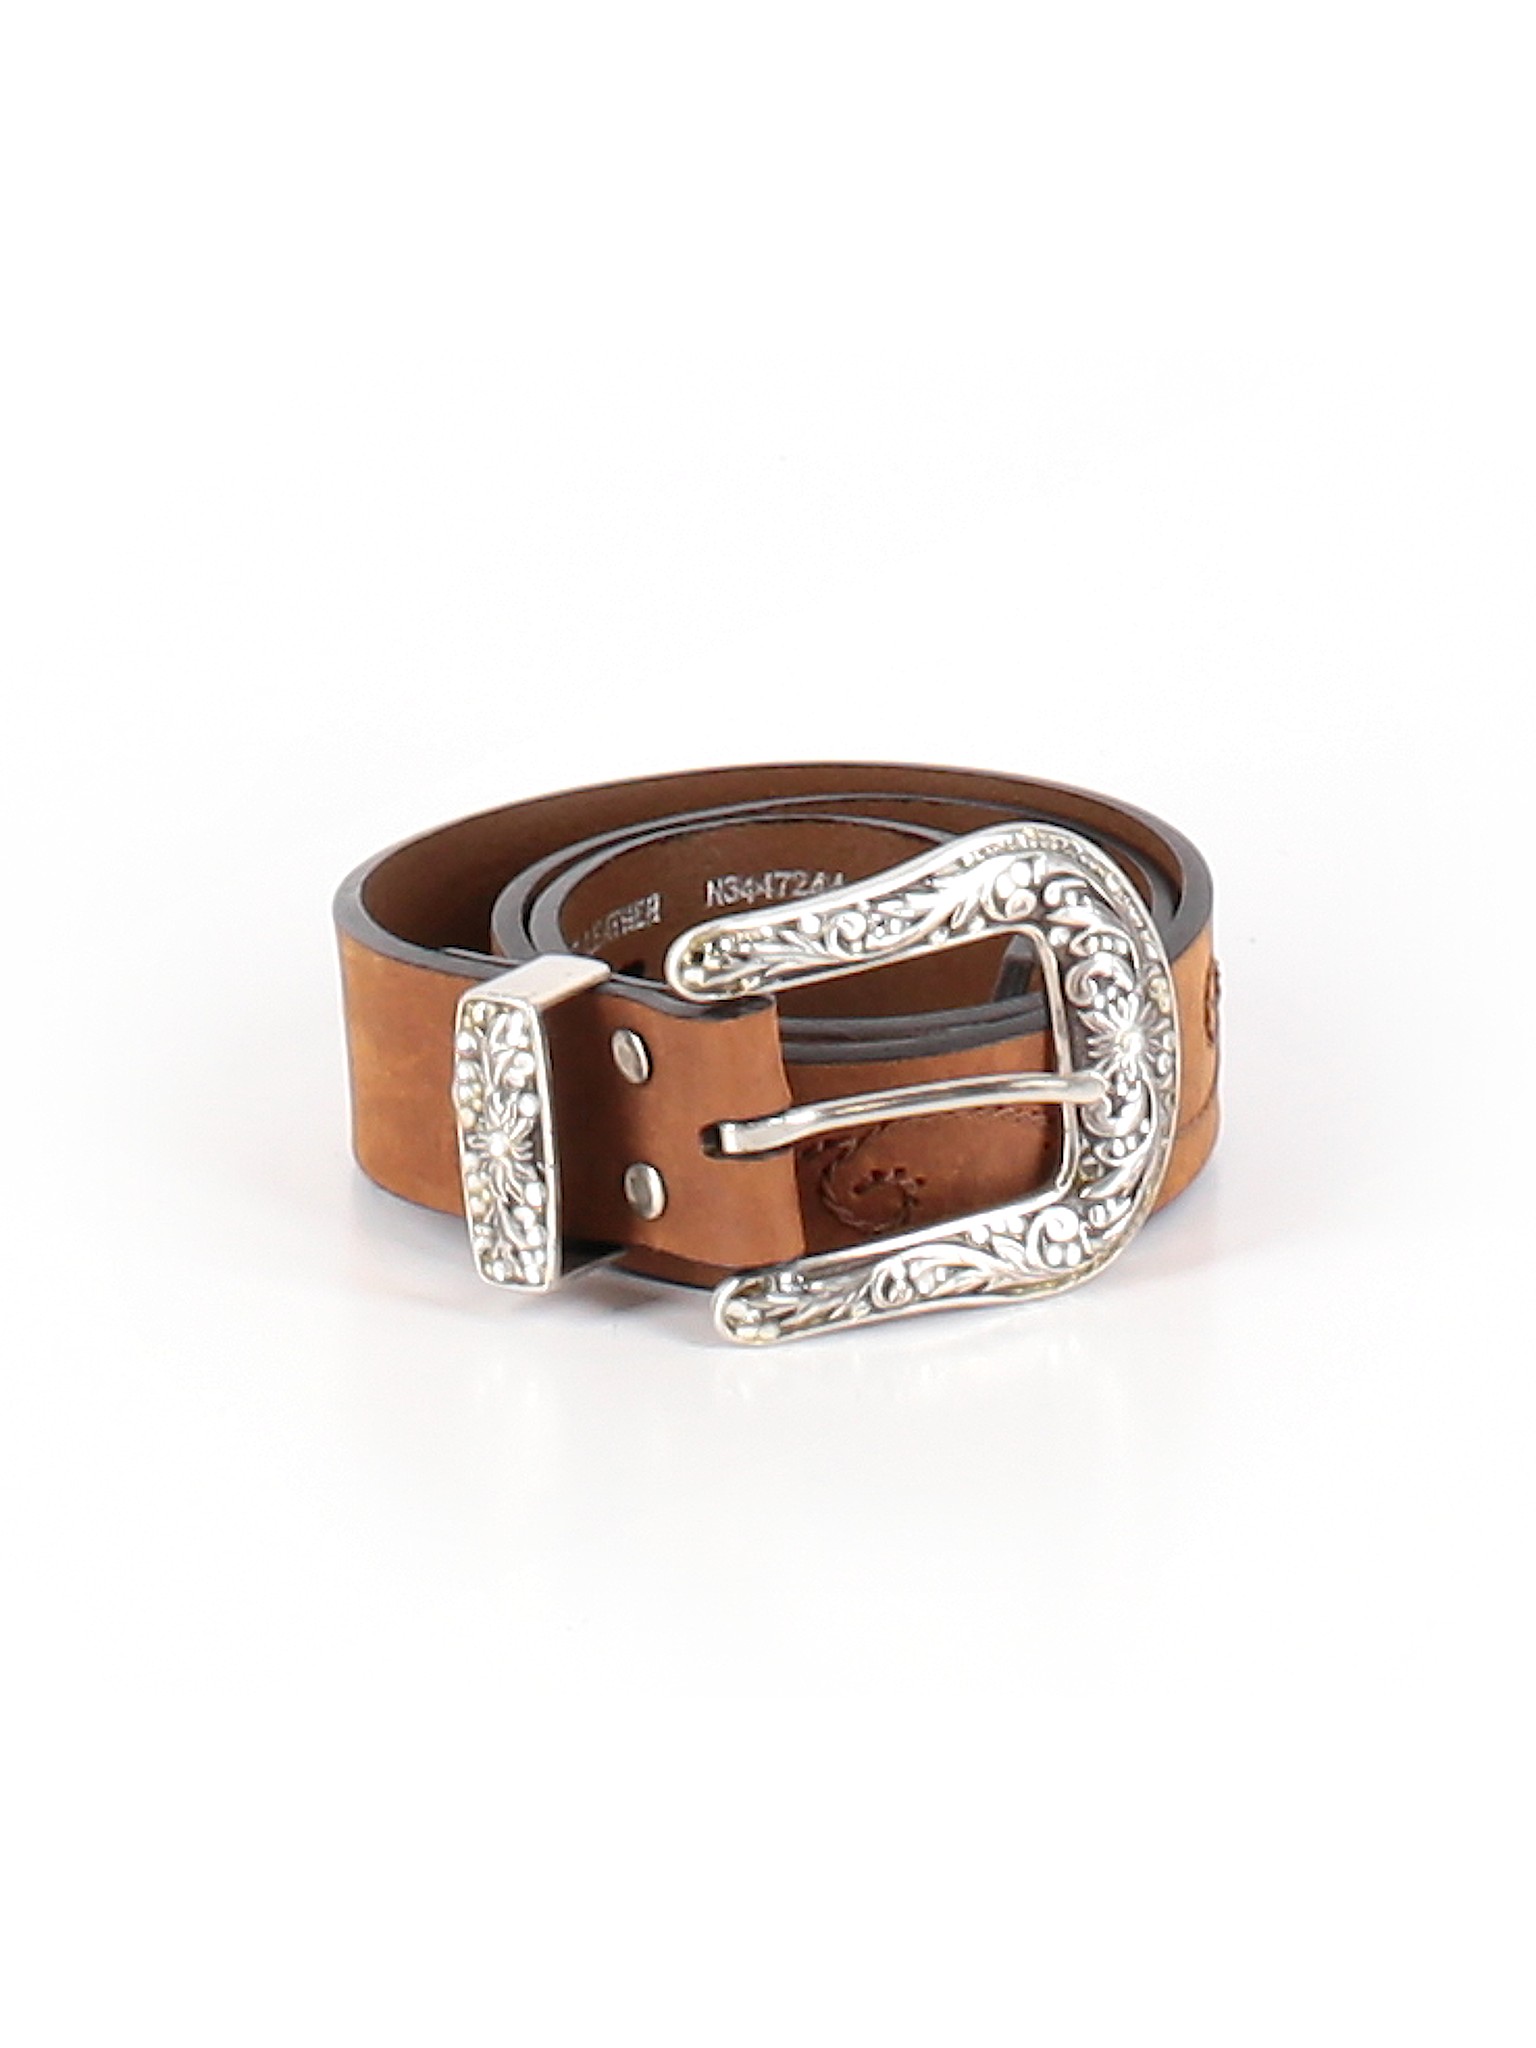 Nocona Belt Co. Women Brown Leather Belt S | eBay